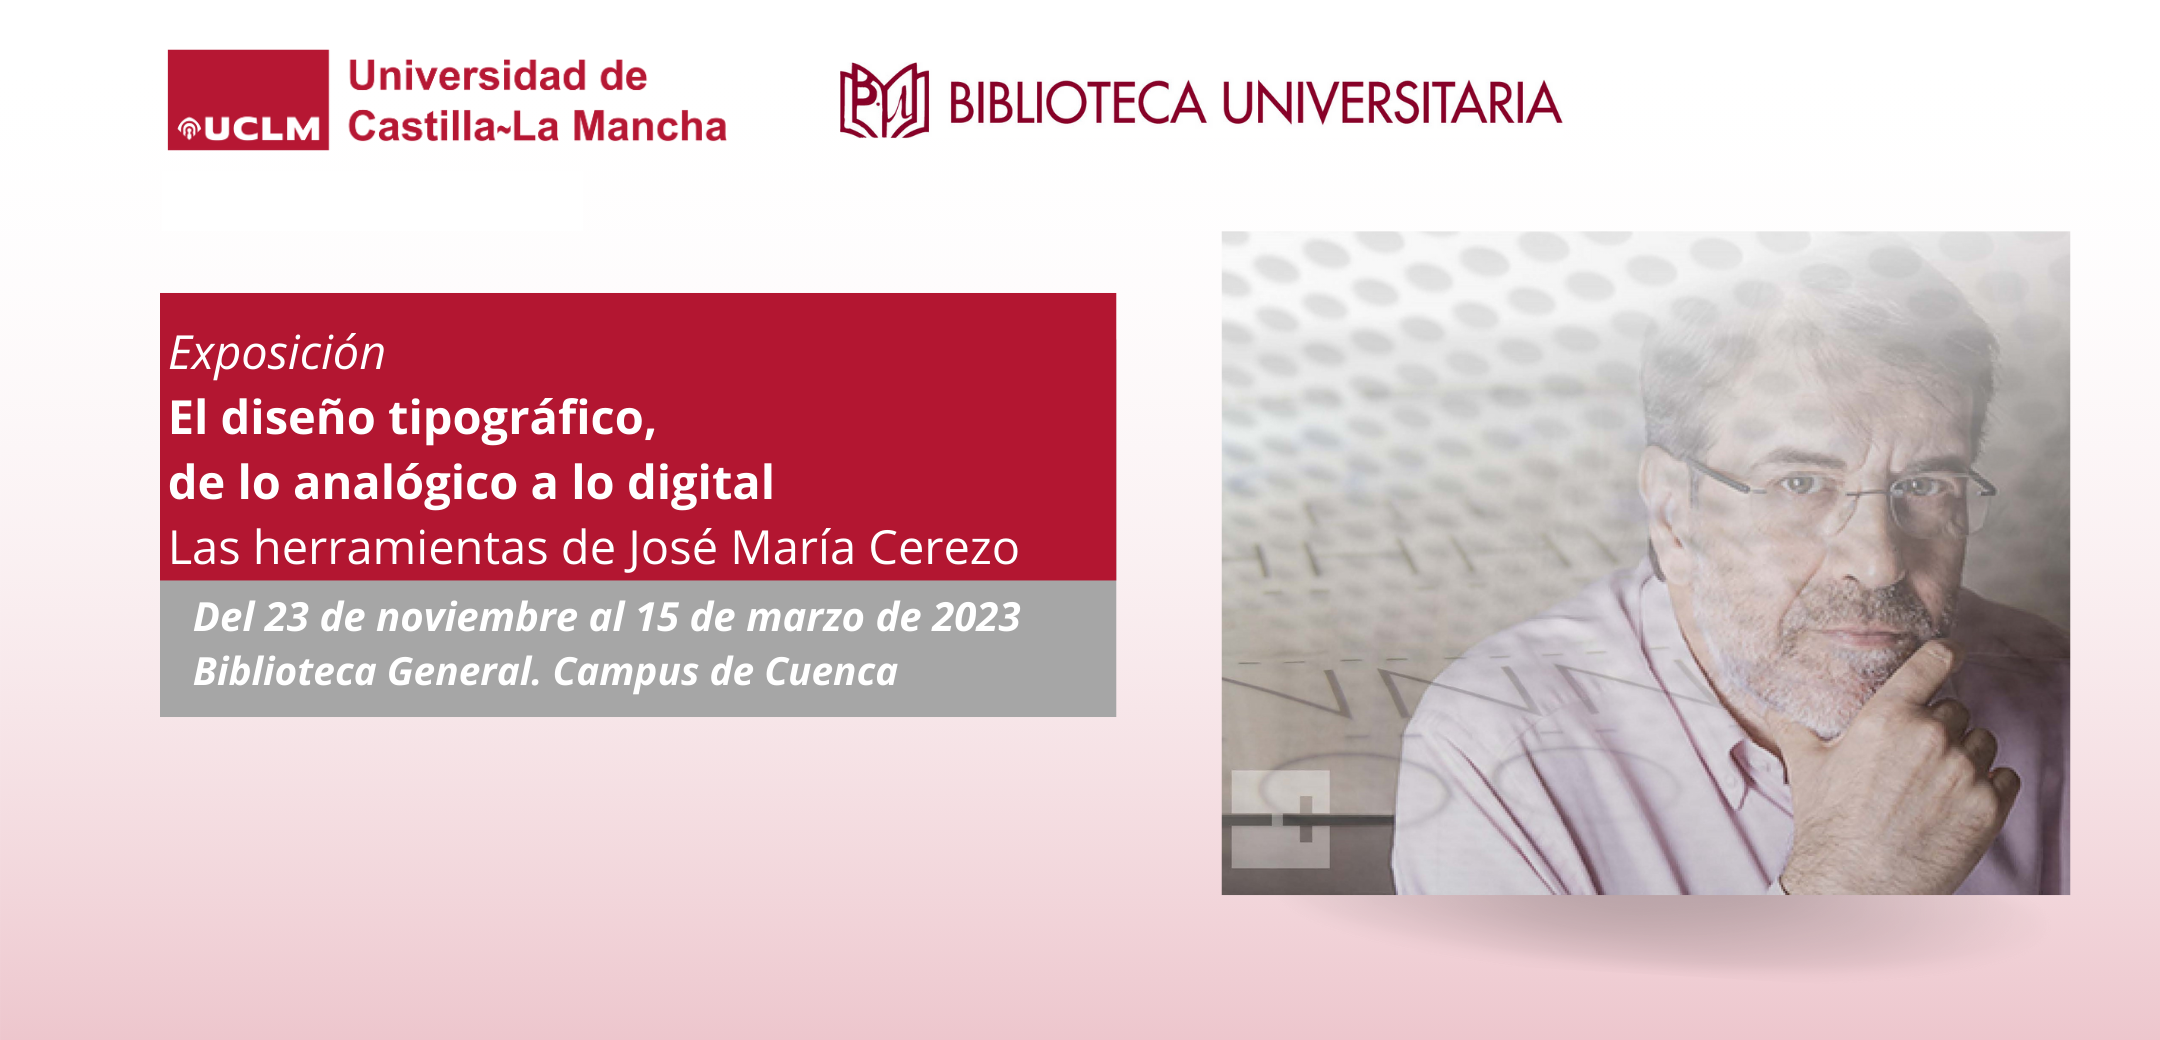 Exposición Biblioteca General del campus de Cuenca